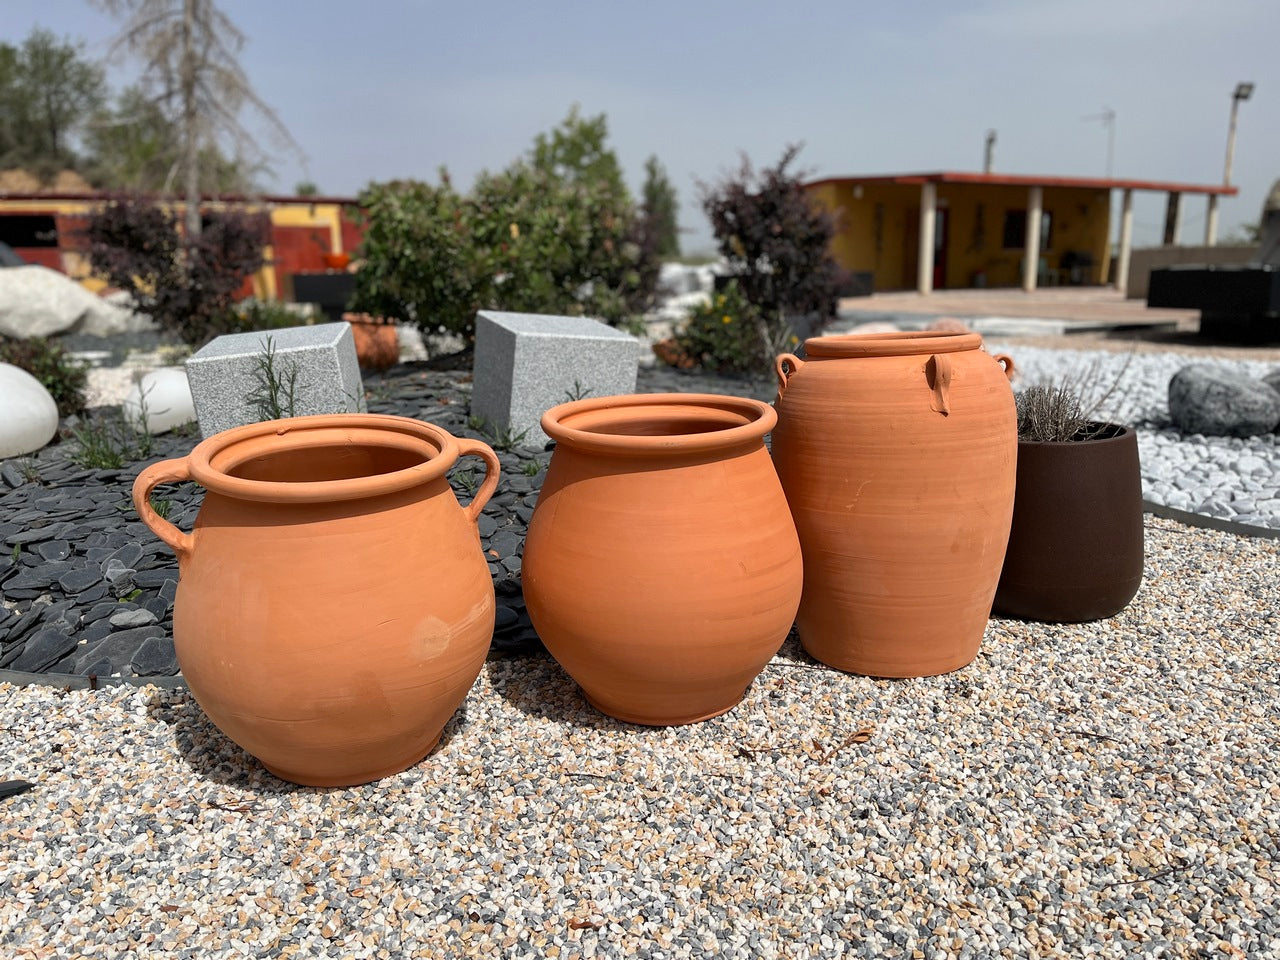 Ceramica artesanal Española